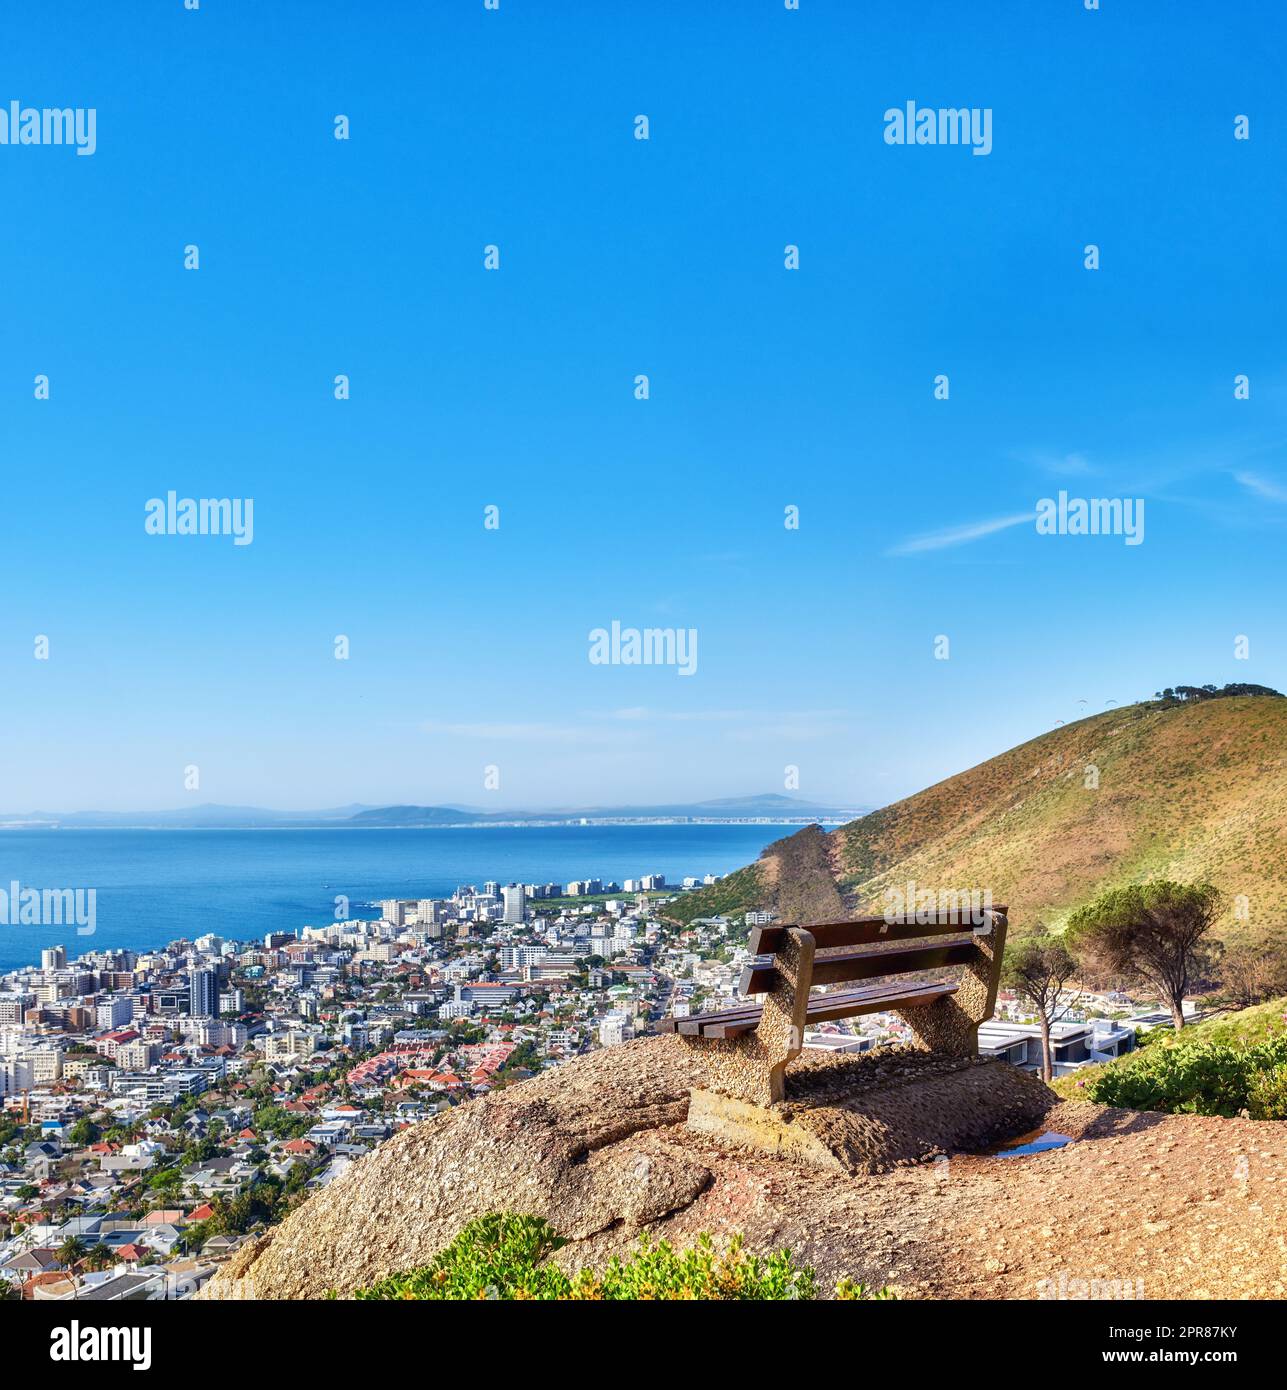 Wunderschöner Blick aus der Vogelperspektive auf eine leere Bank mit Blick auf die Stadt und das Meer in Kapstadt, Südafrika, vor dem blauen Himmel. Ein ruhiger, sonniger Tag mit einem Parkstuhl auf einer Klippe, mit malerischer Aussicht und frischer Luft Stockfoto